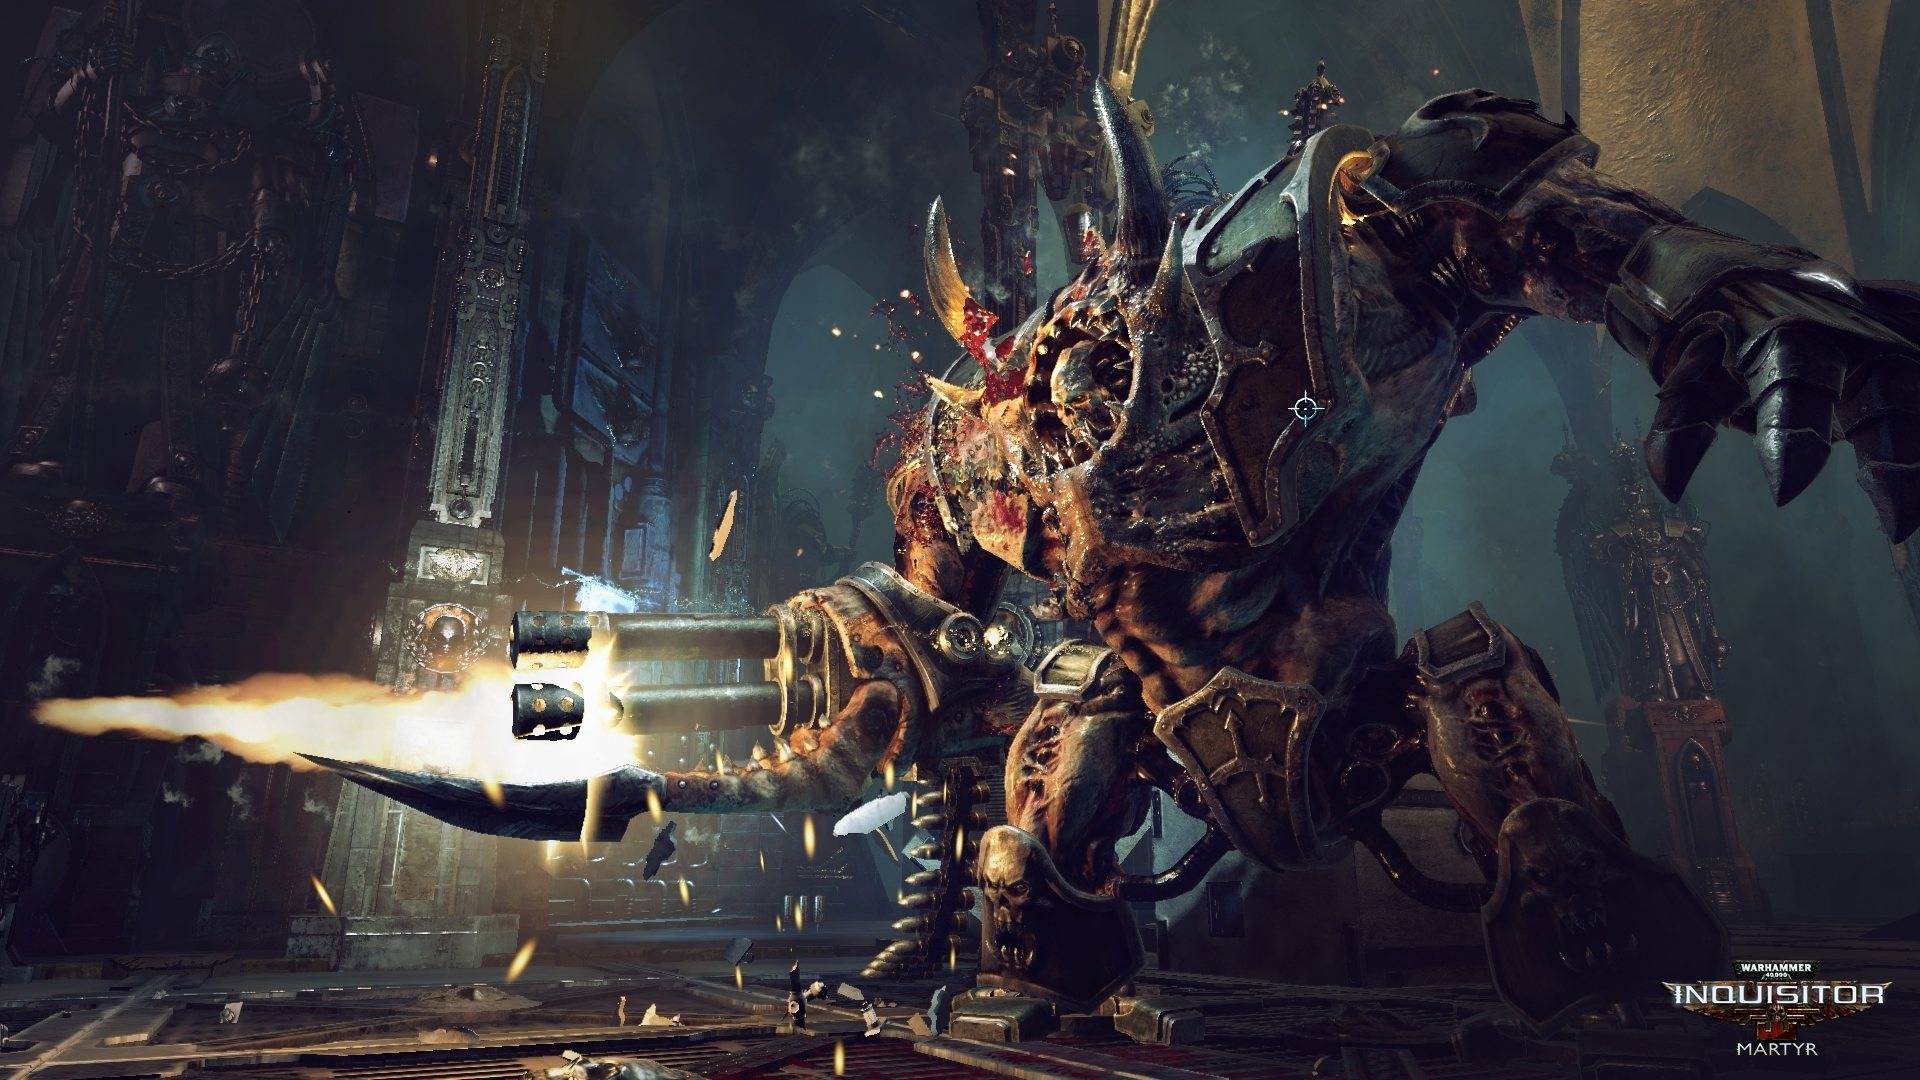 Warhammer 40,000: Inquisitor — Martyr